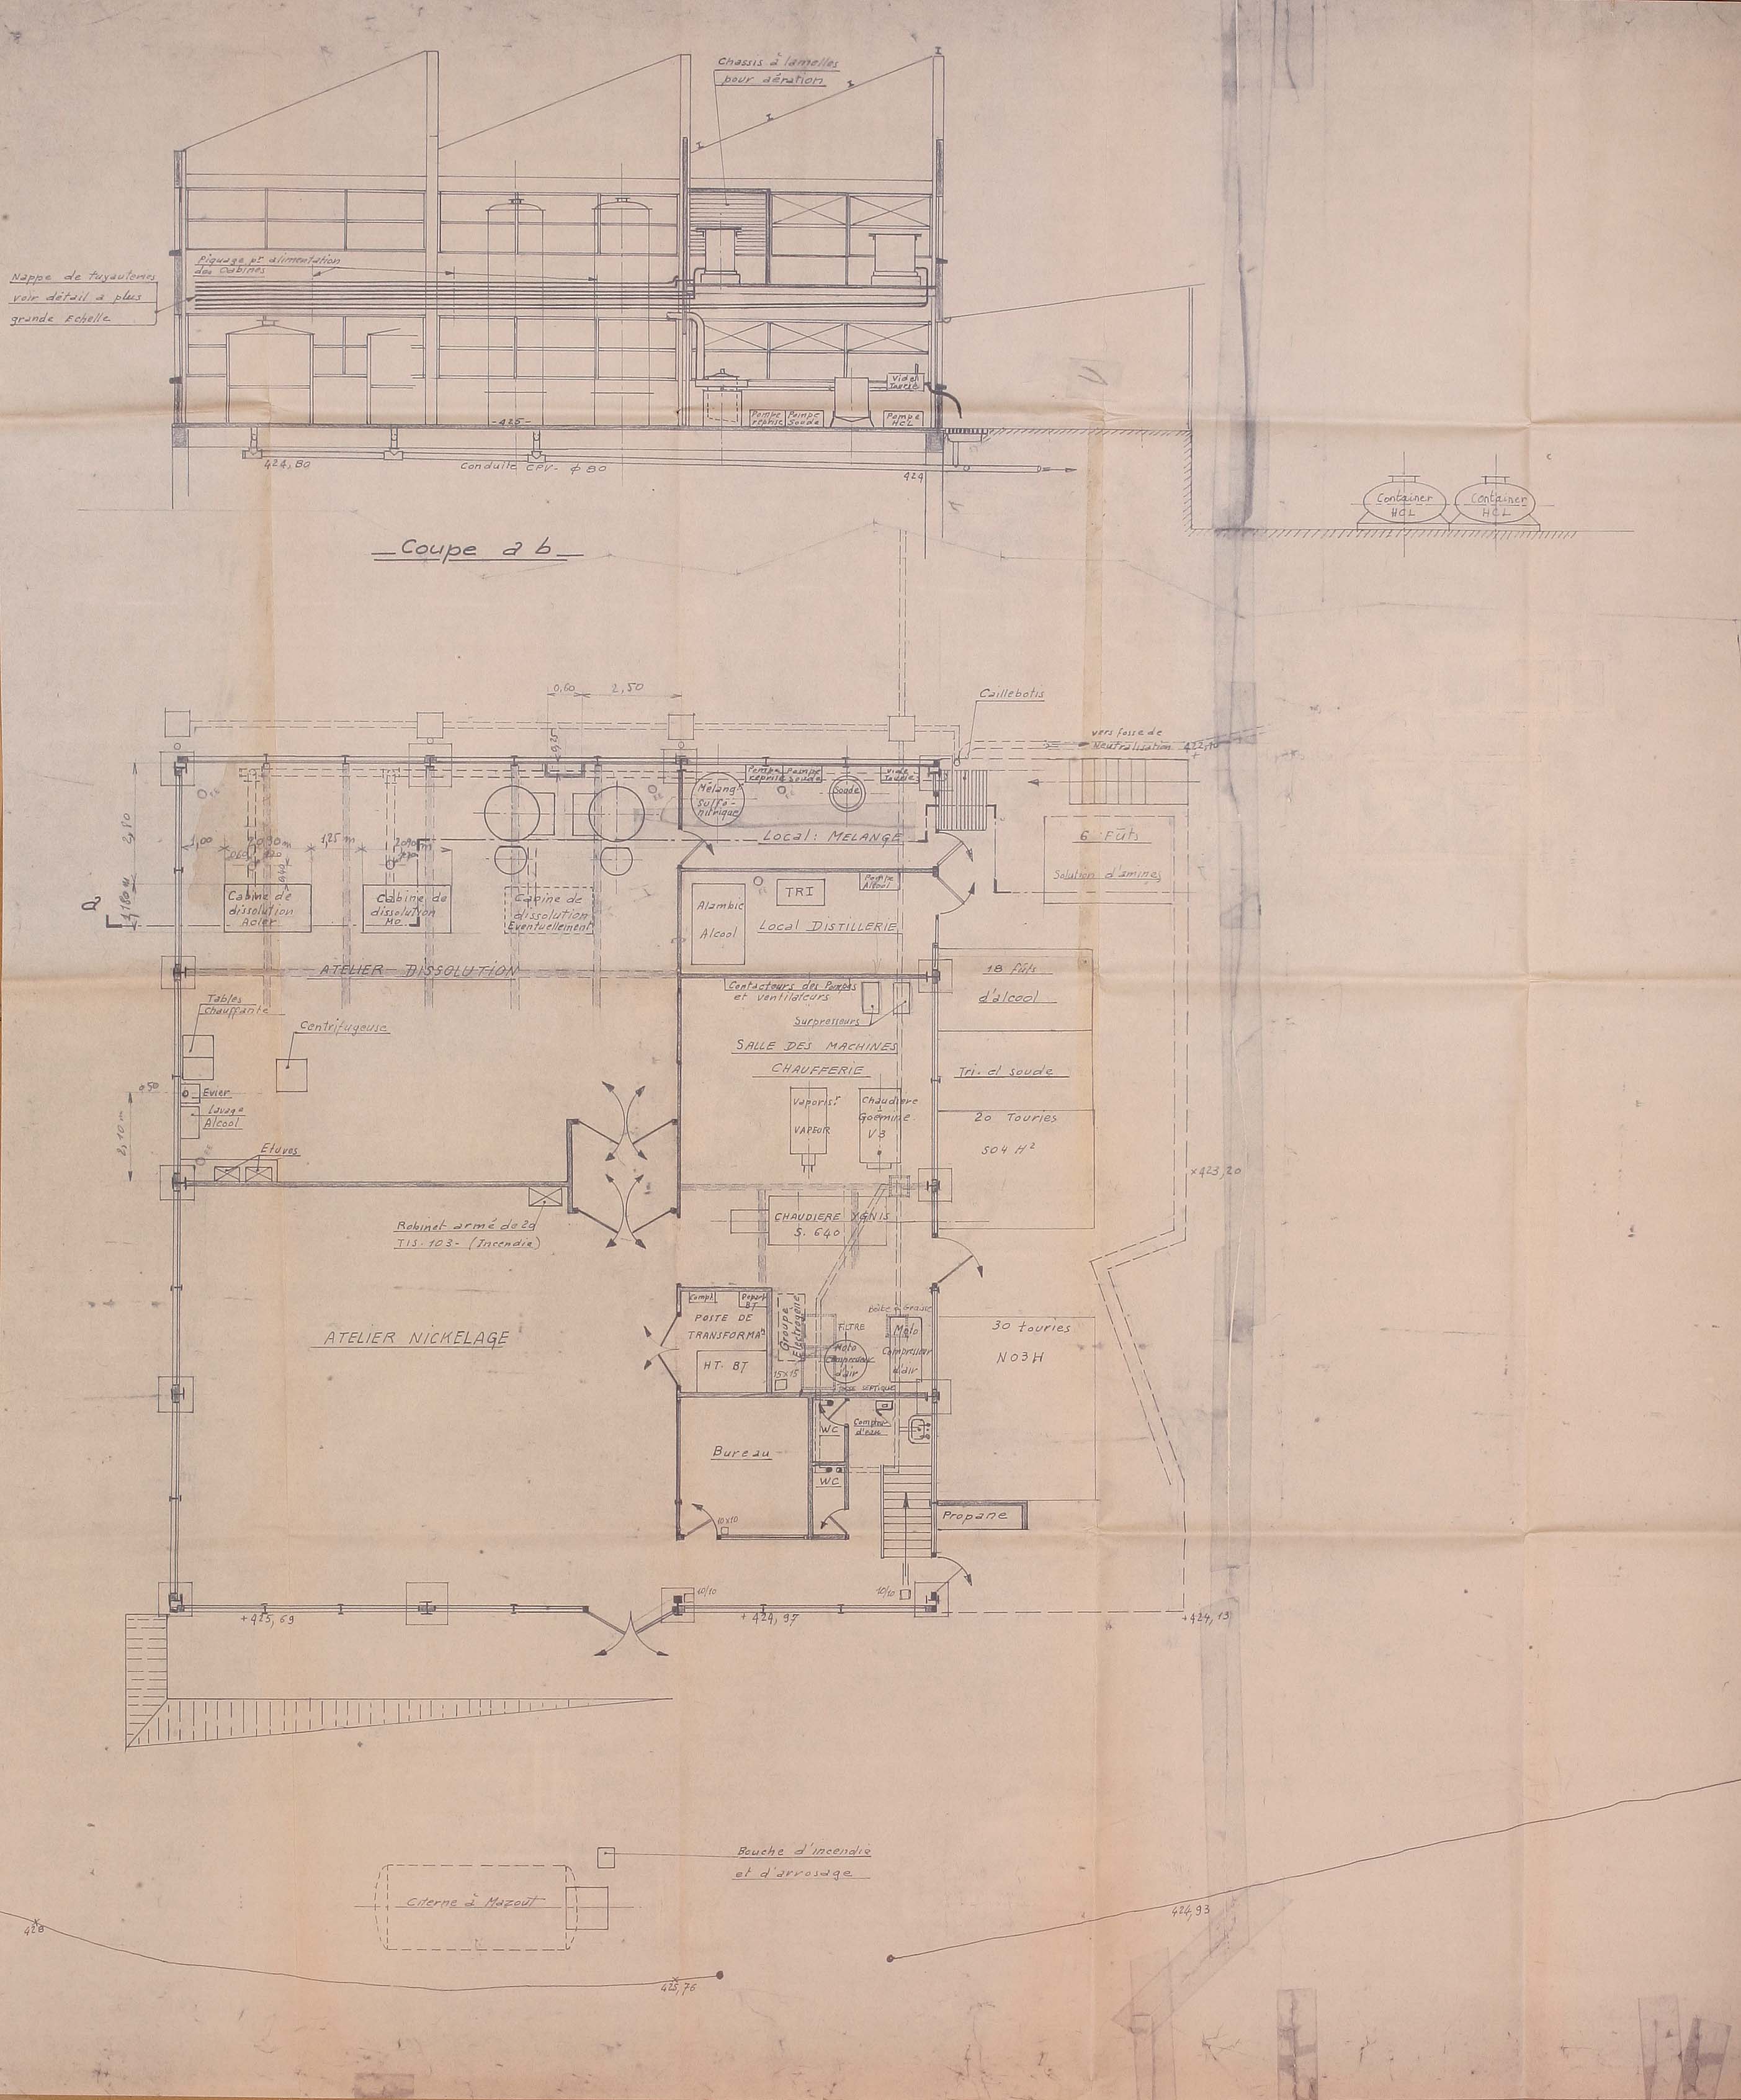 Coupe et plan du bâtiment E de la FRLE (1966) couvert en sheds, avec la salle des machines et la chaufferie (AC Aubusson).